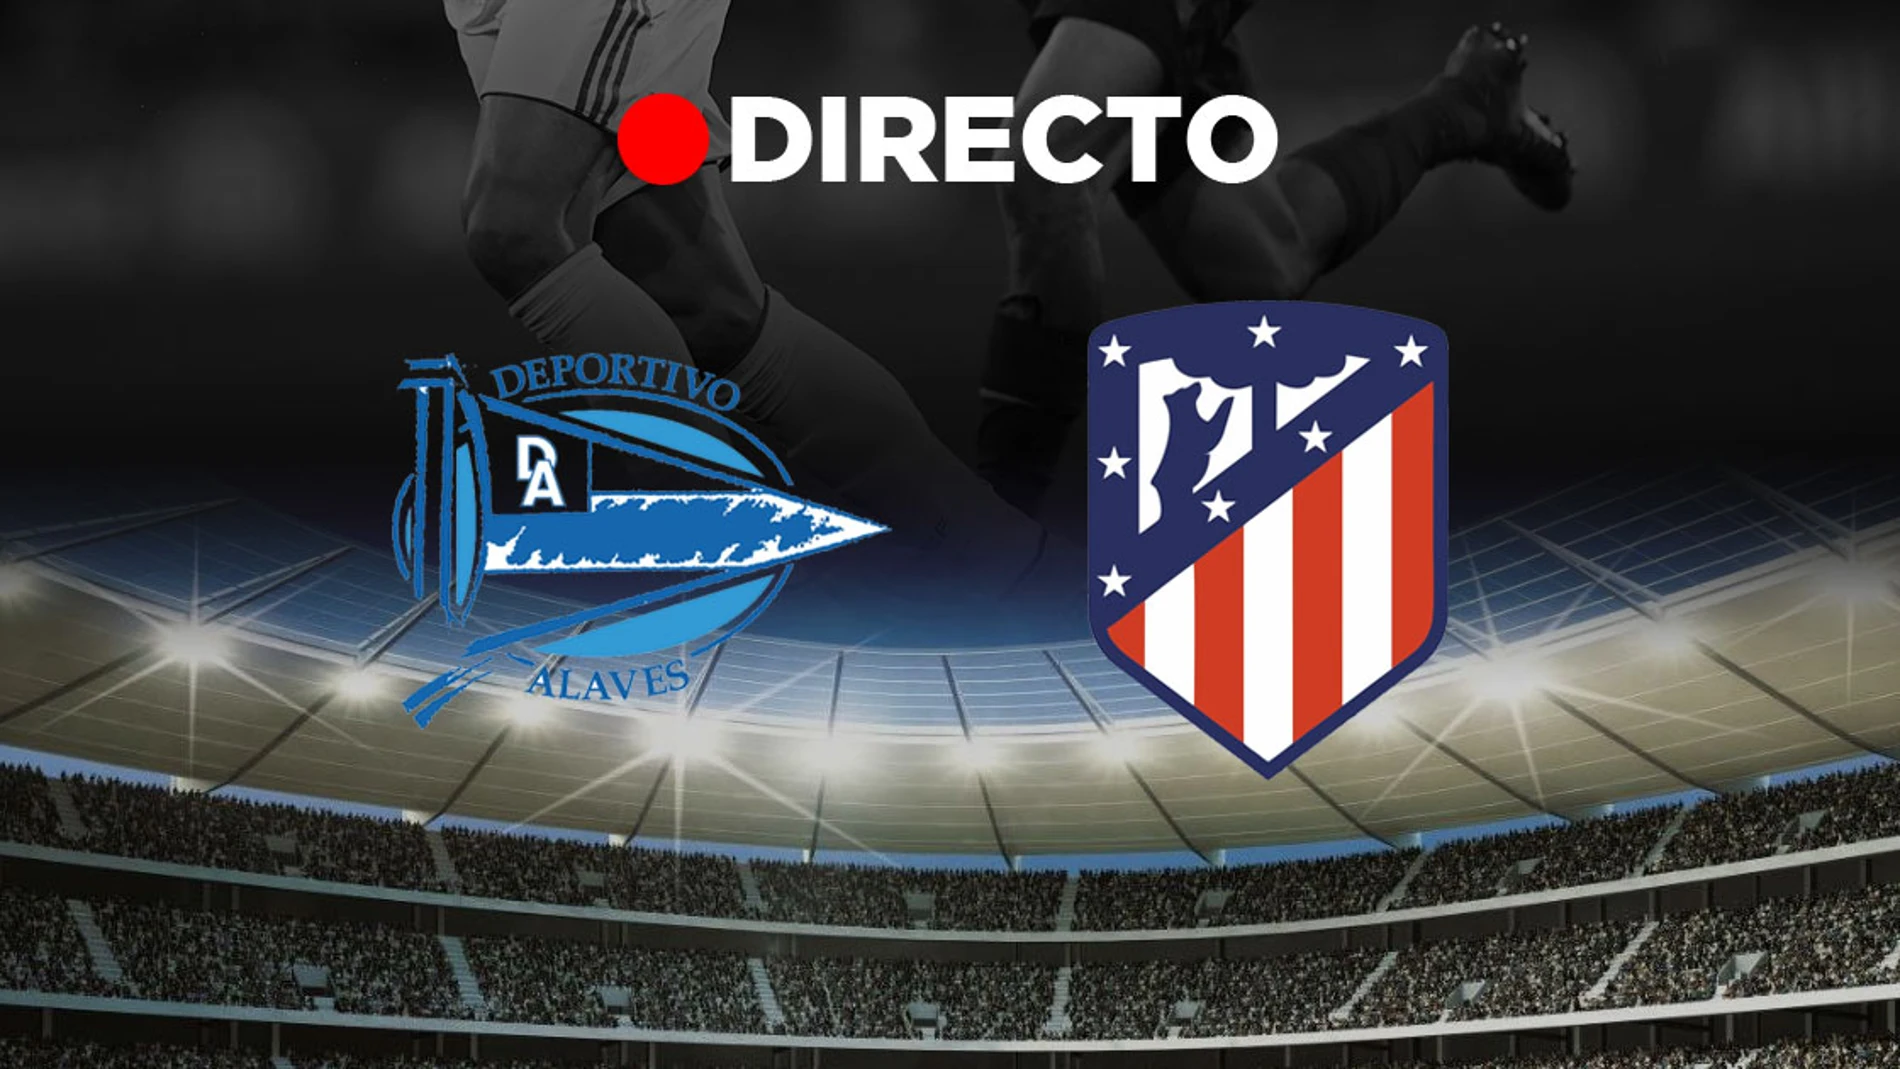 Alavés - Atlético de Madrid, partido de la jornada 11 de LaLiga 2019/2020